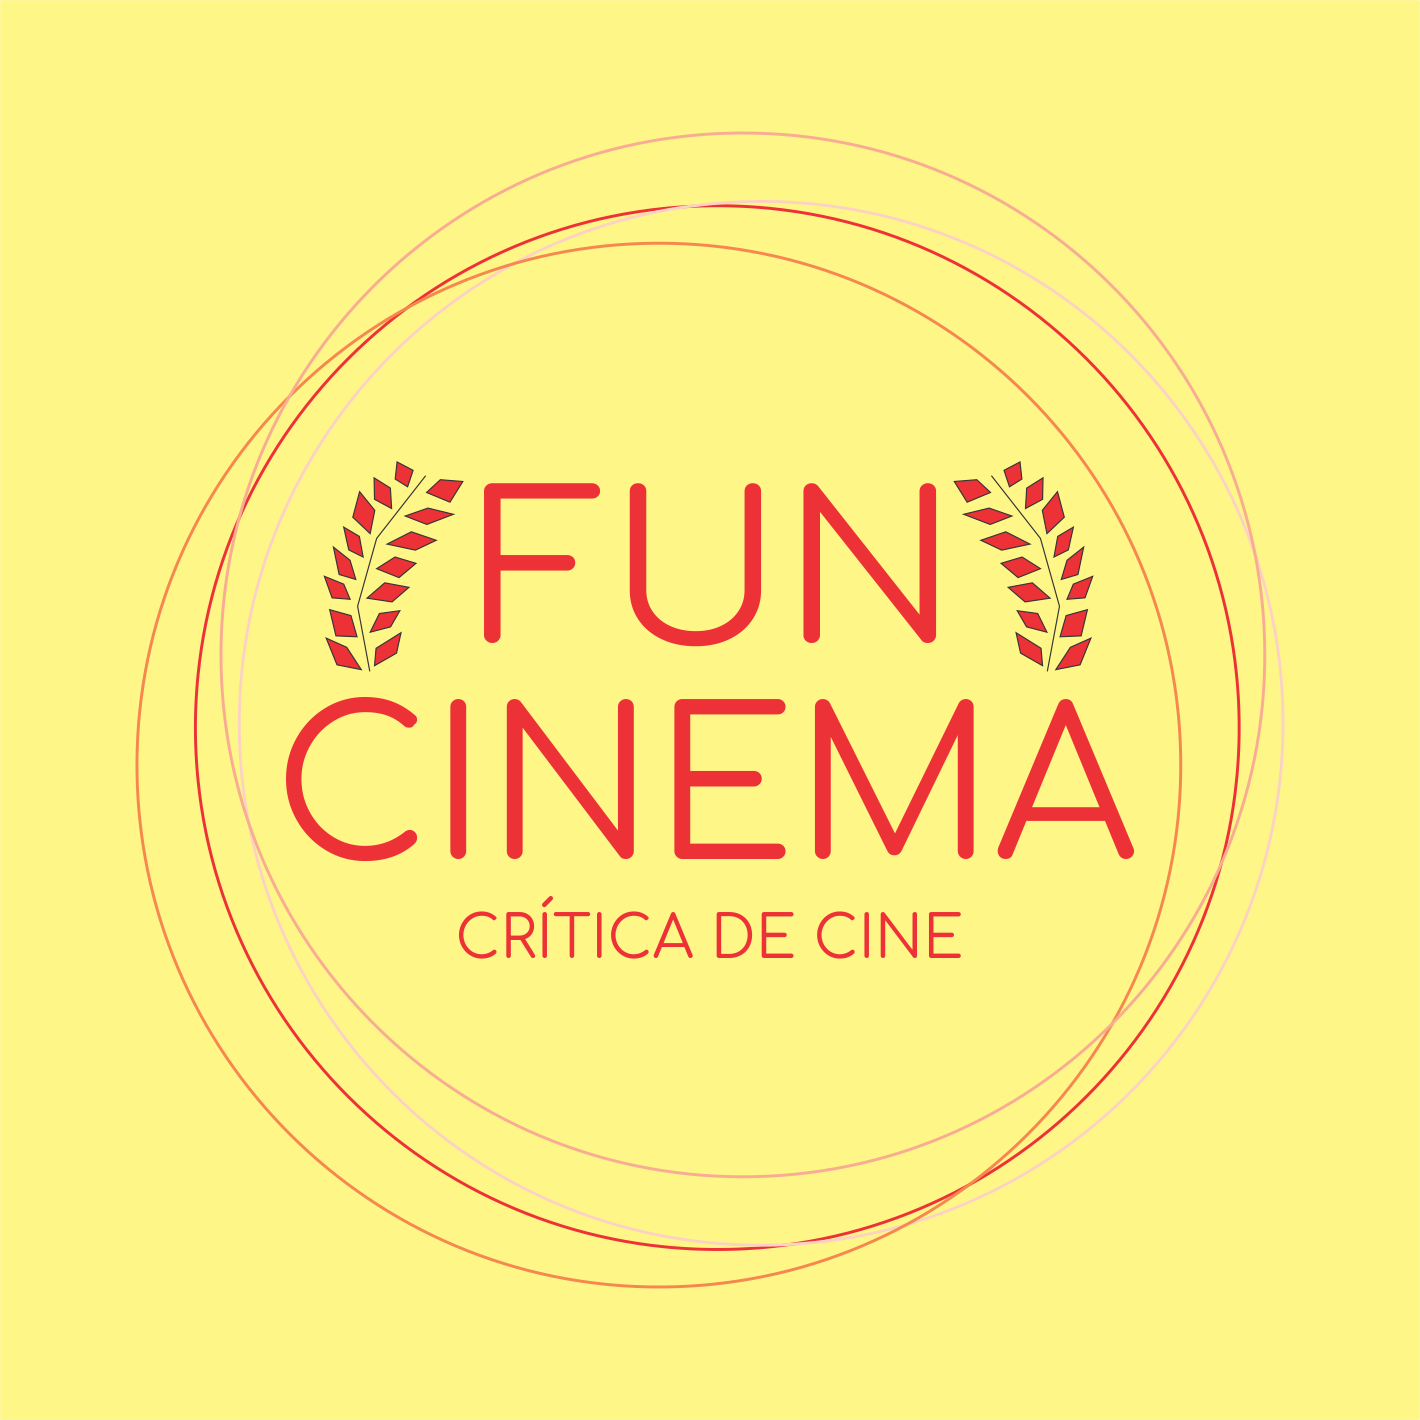 Desde noviembre de 2006 escribiendo sobre cine. Nos escuchan en @FuncinemaR y nos ven en @FuncinemaFest.
-¿Aportás un cafecito?: https://t.co/tKJDBZ7onf